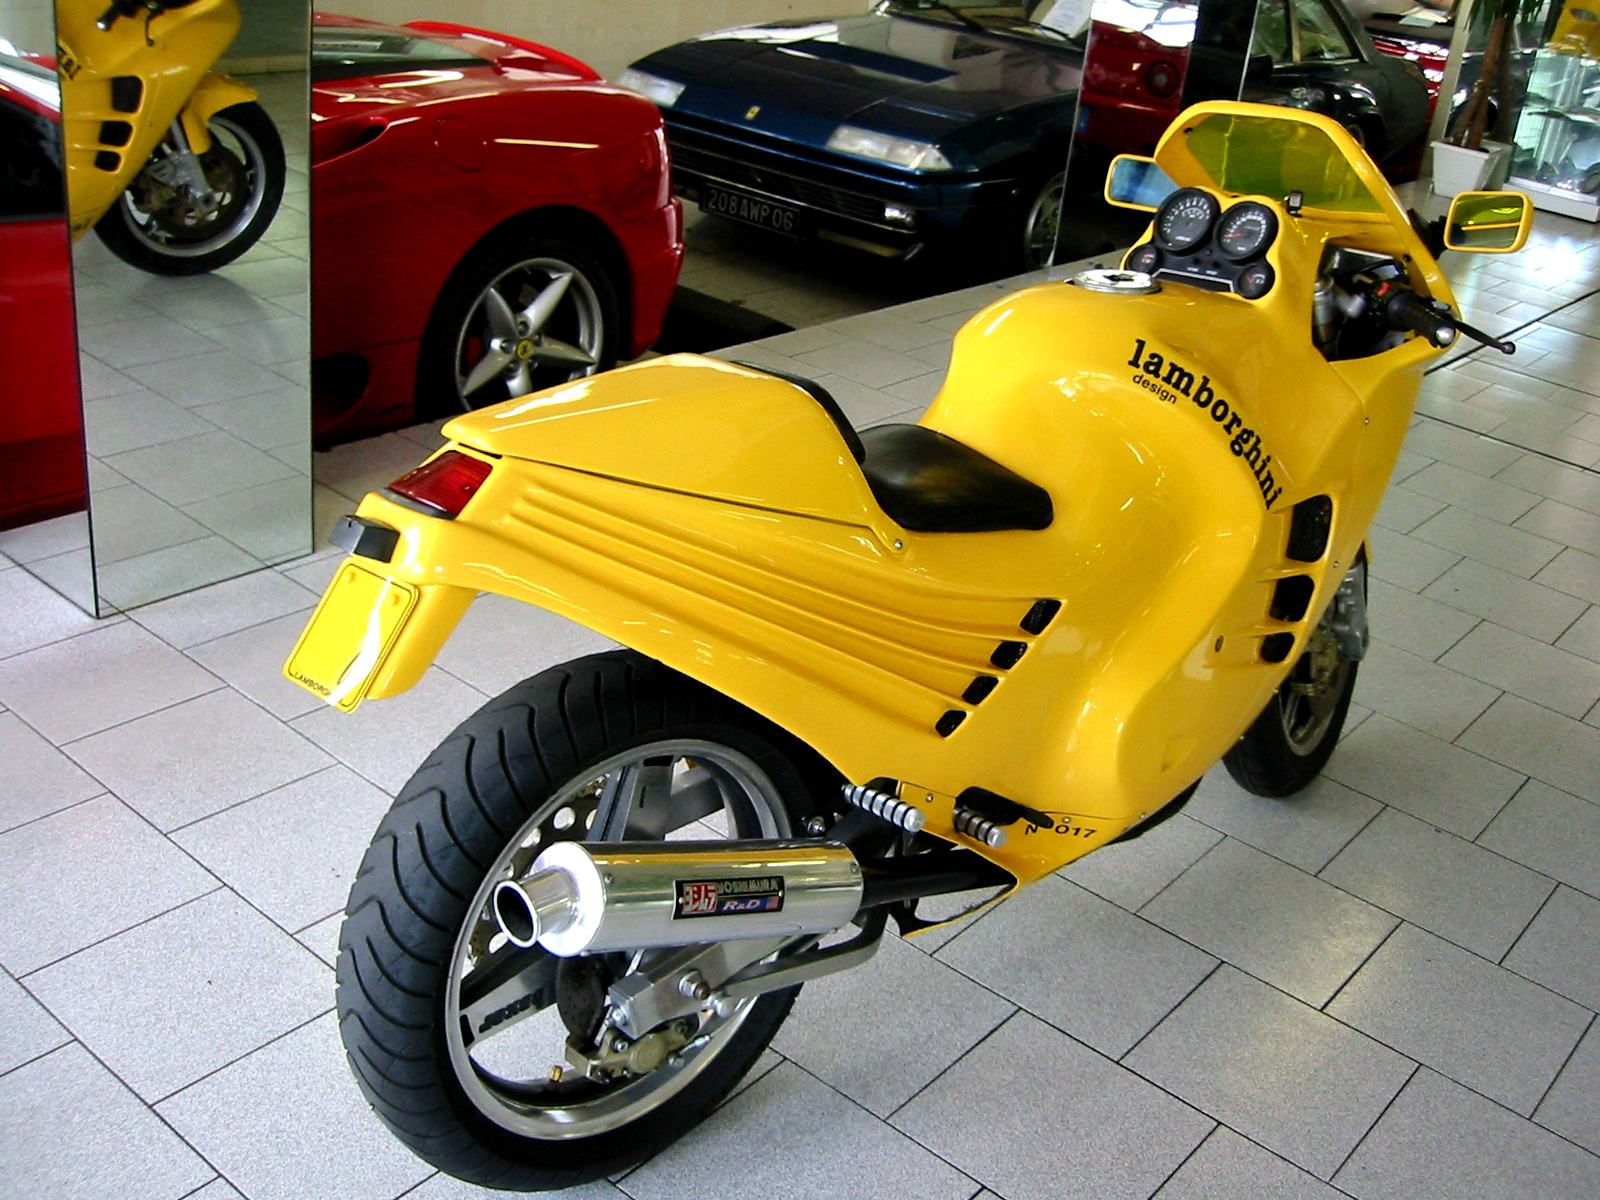 LAMBORGHINI Motorcycle for sale at Autodrome Paris ...